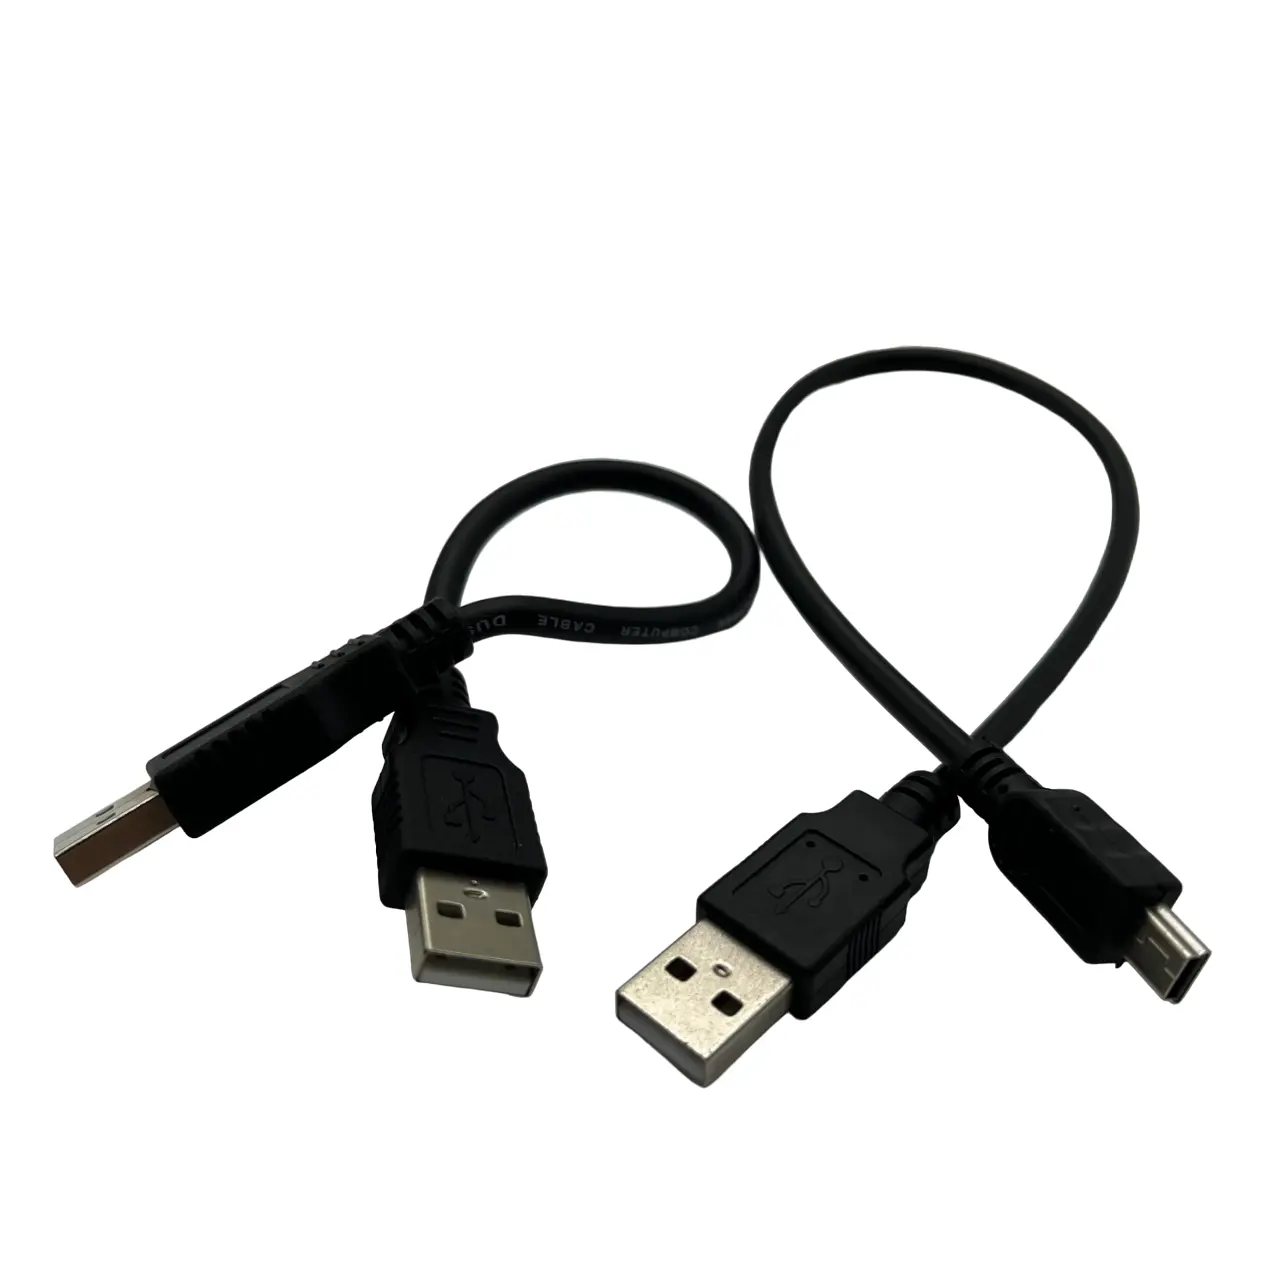 ชุดสายเคเบิลแบบกําหนดเองสาย USB สําหรับเครื่องสแกนเนอร์เครื่องพิมพ์ ความเร็วสูง USB2.0 ชุดสายเคเบิลเครื่องพิมพ์ชายถึง B ชาย